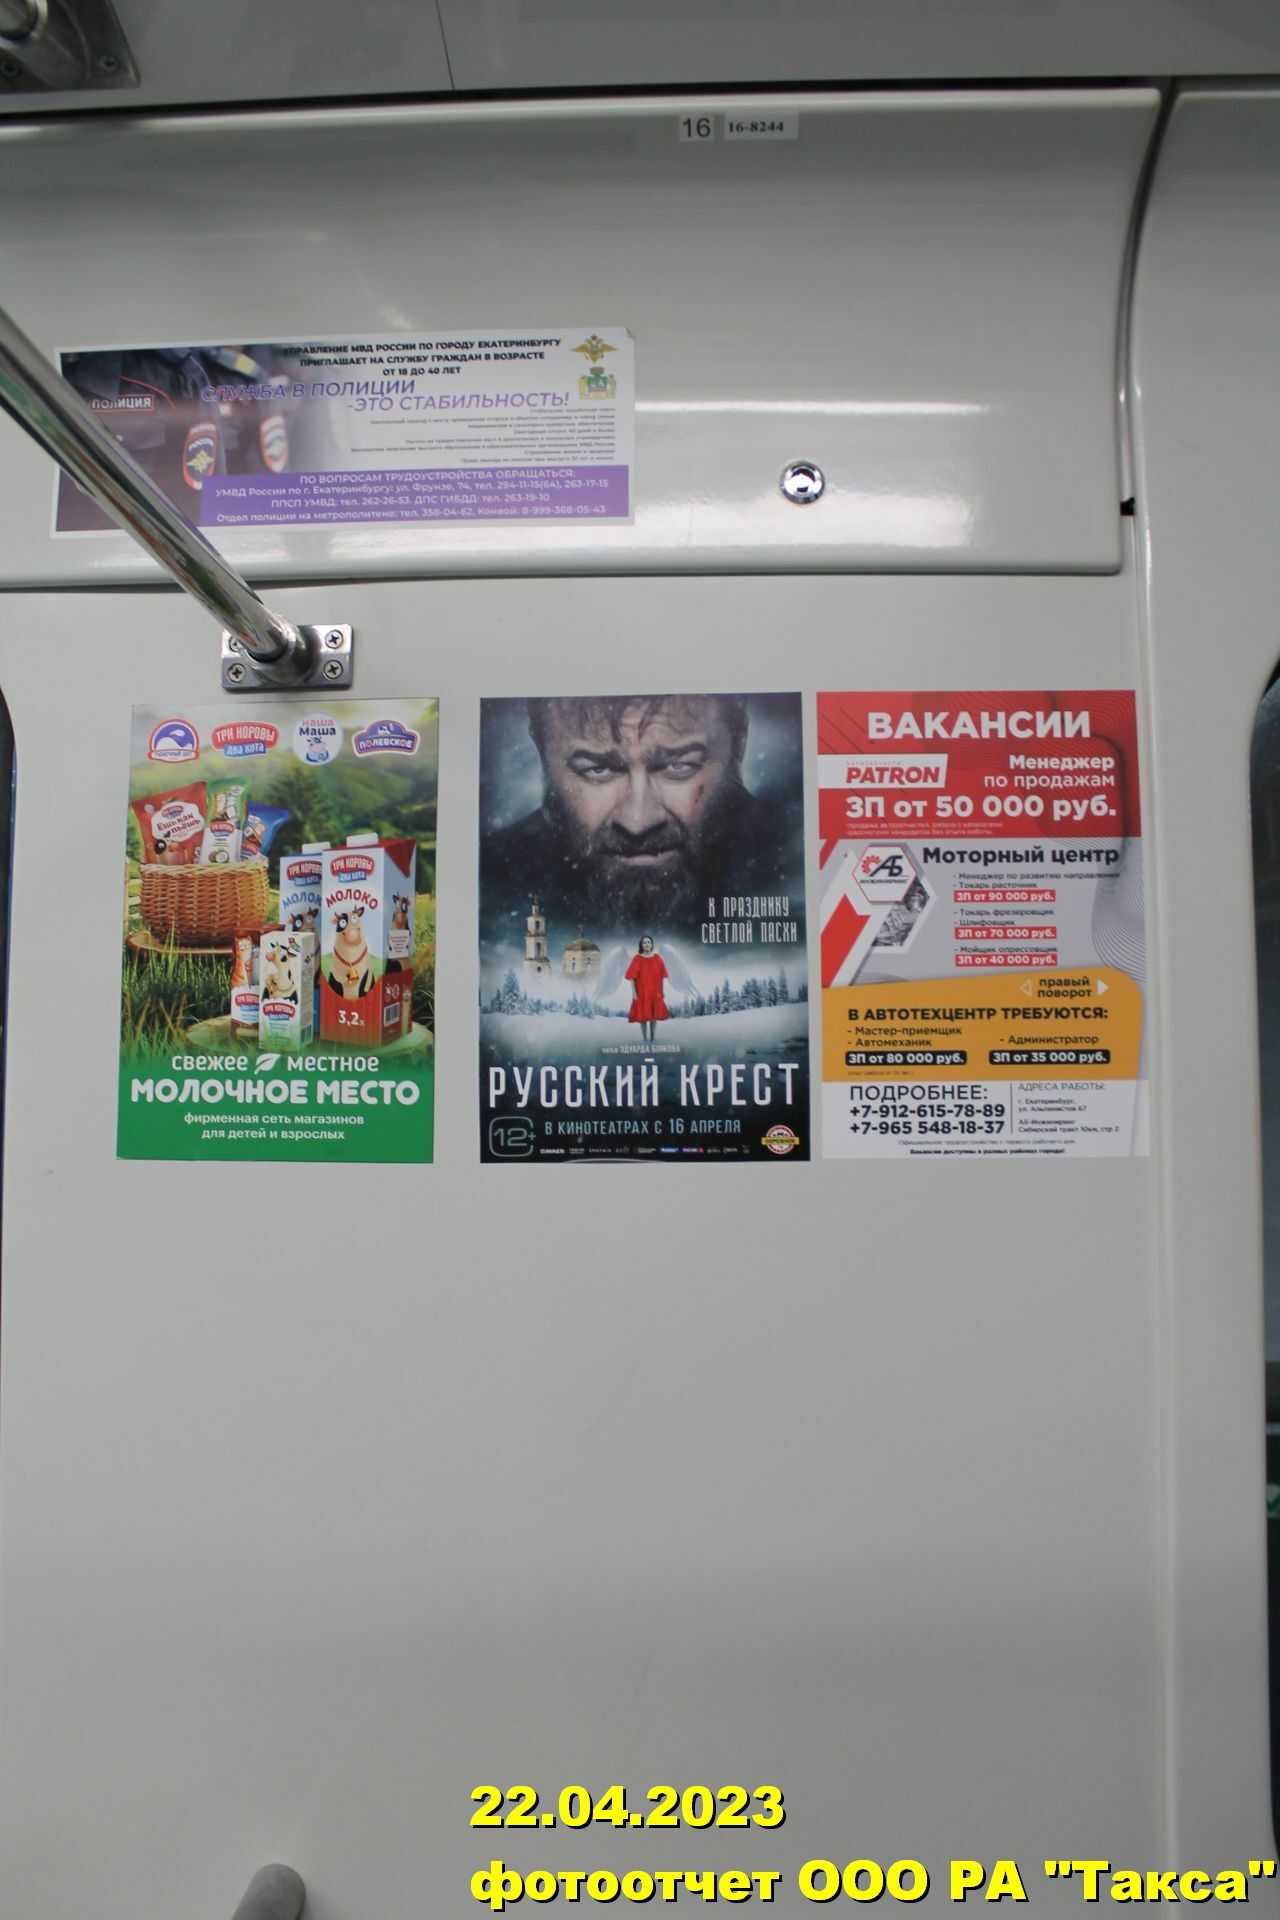 Реклама в метро: эффективный способ продвижения бизнеса